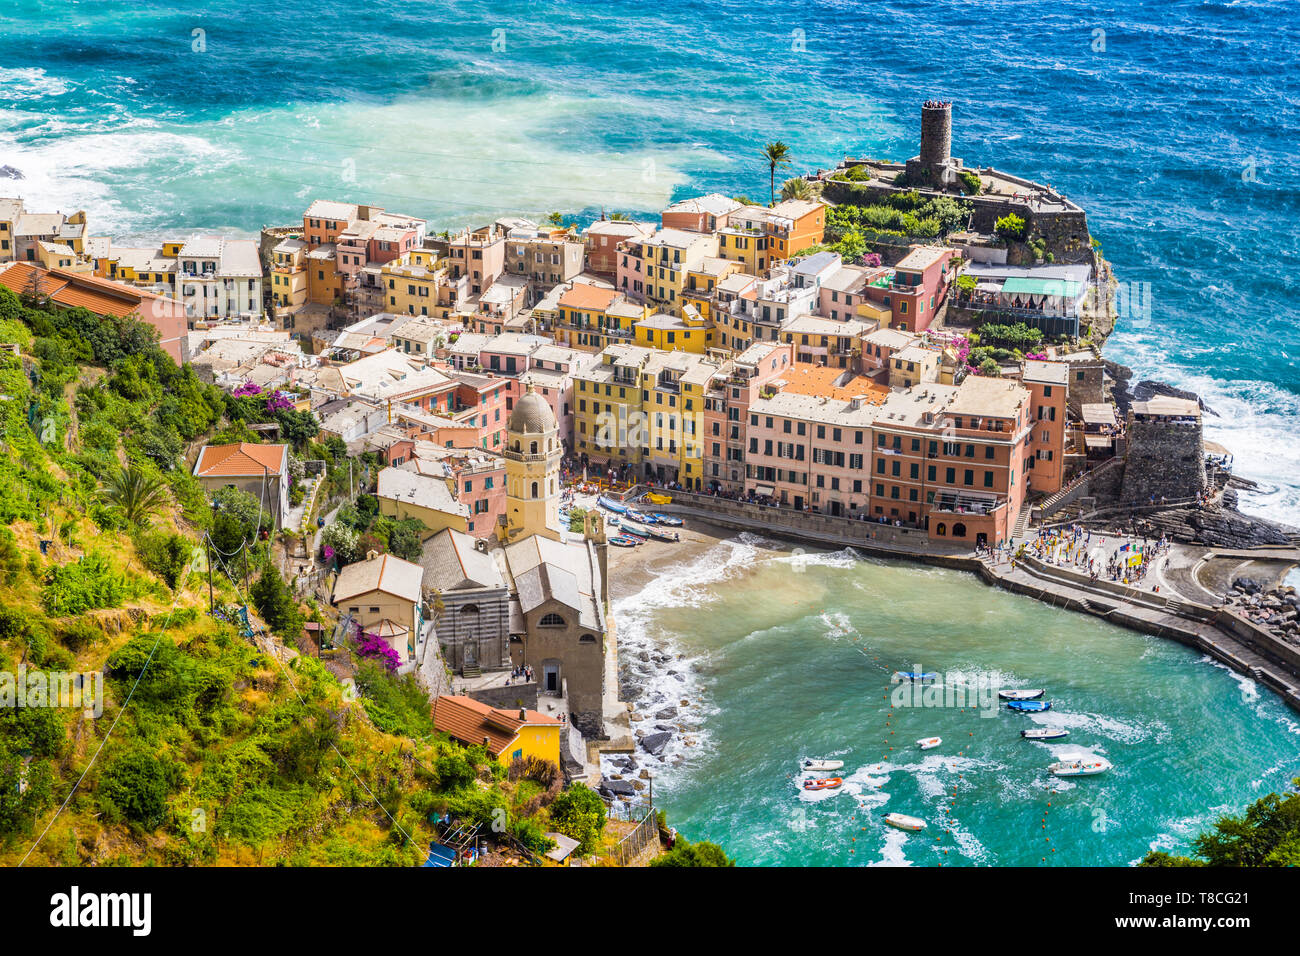 Bellissima vista di Vernazza, uno dei cinque famosi villaggi di pescatori delle Cinque Terre, Liguria, Italia Foto Stock